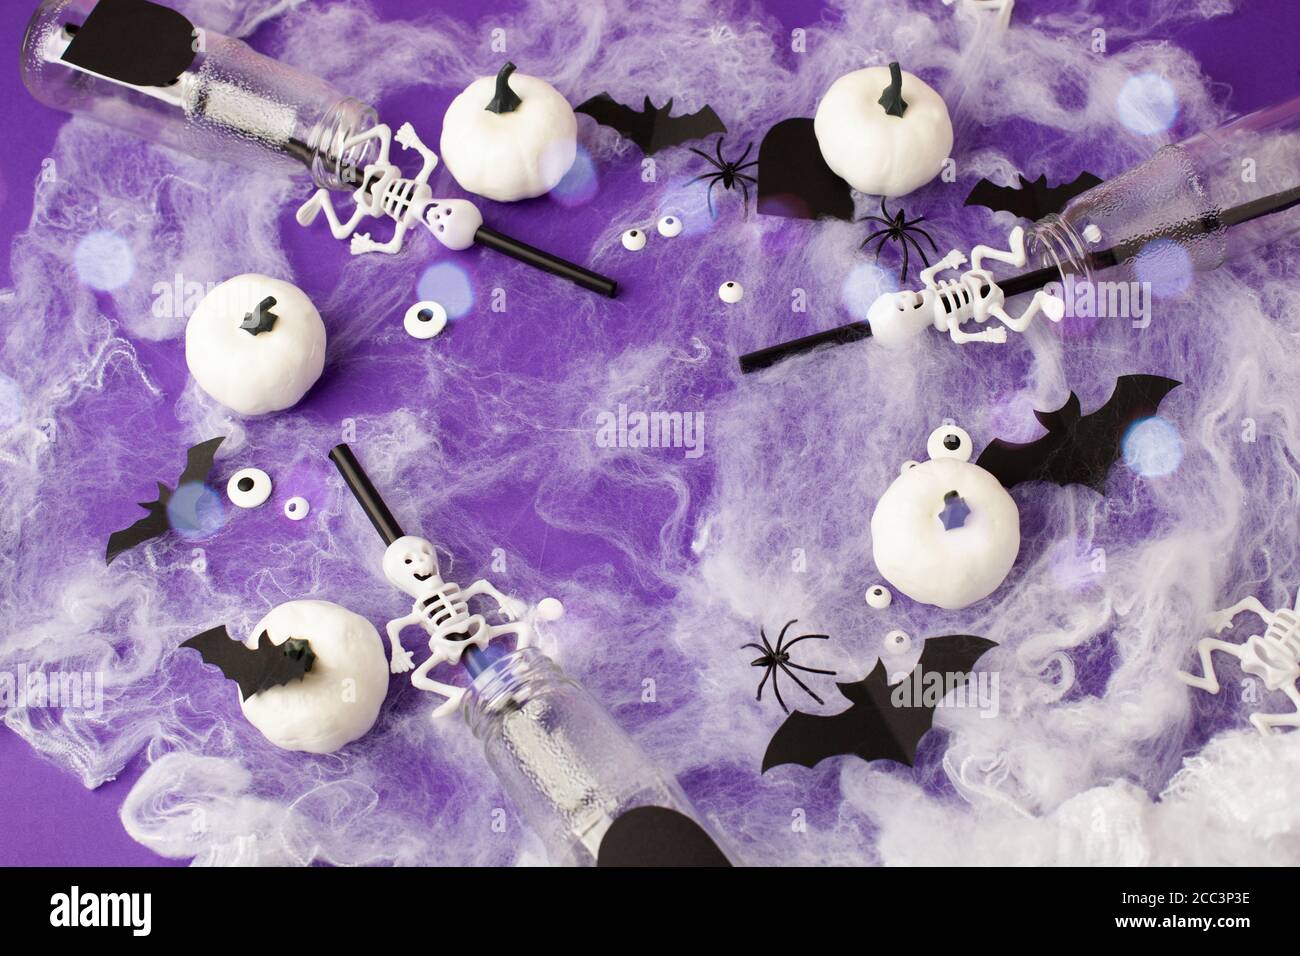 Joyeux Halloween concept de vacances. Décorations effrayantes, toile d'araignée, citrouilles, chauves-souris, bouteilles pour cocktails et pailles sur fond violet. Accueil de fête Banque D'Images